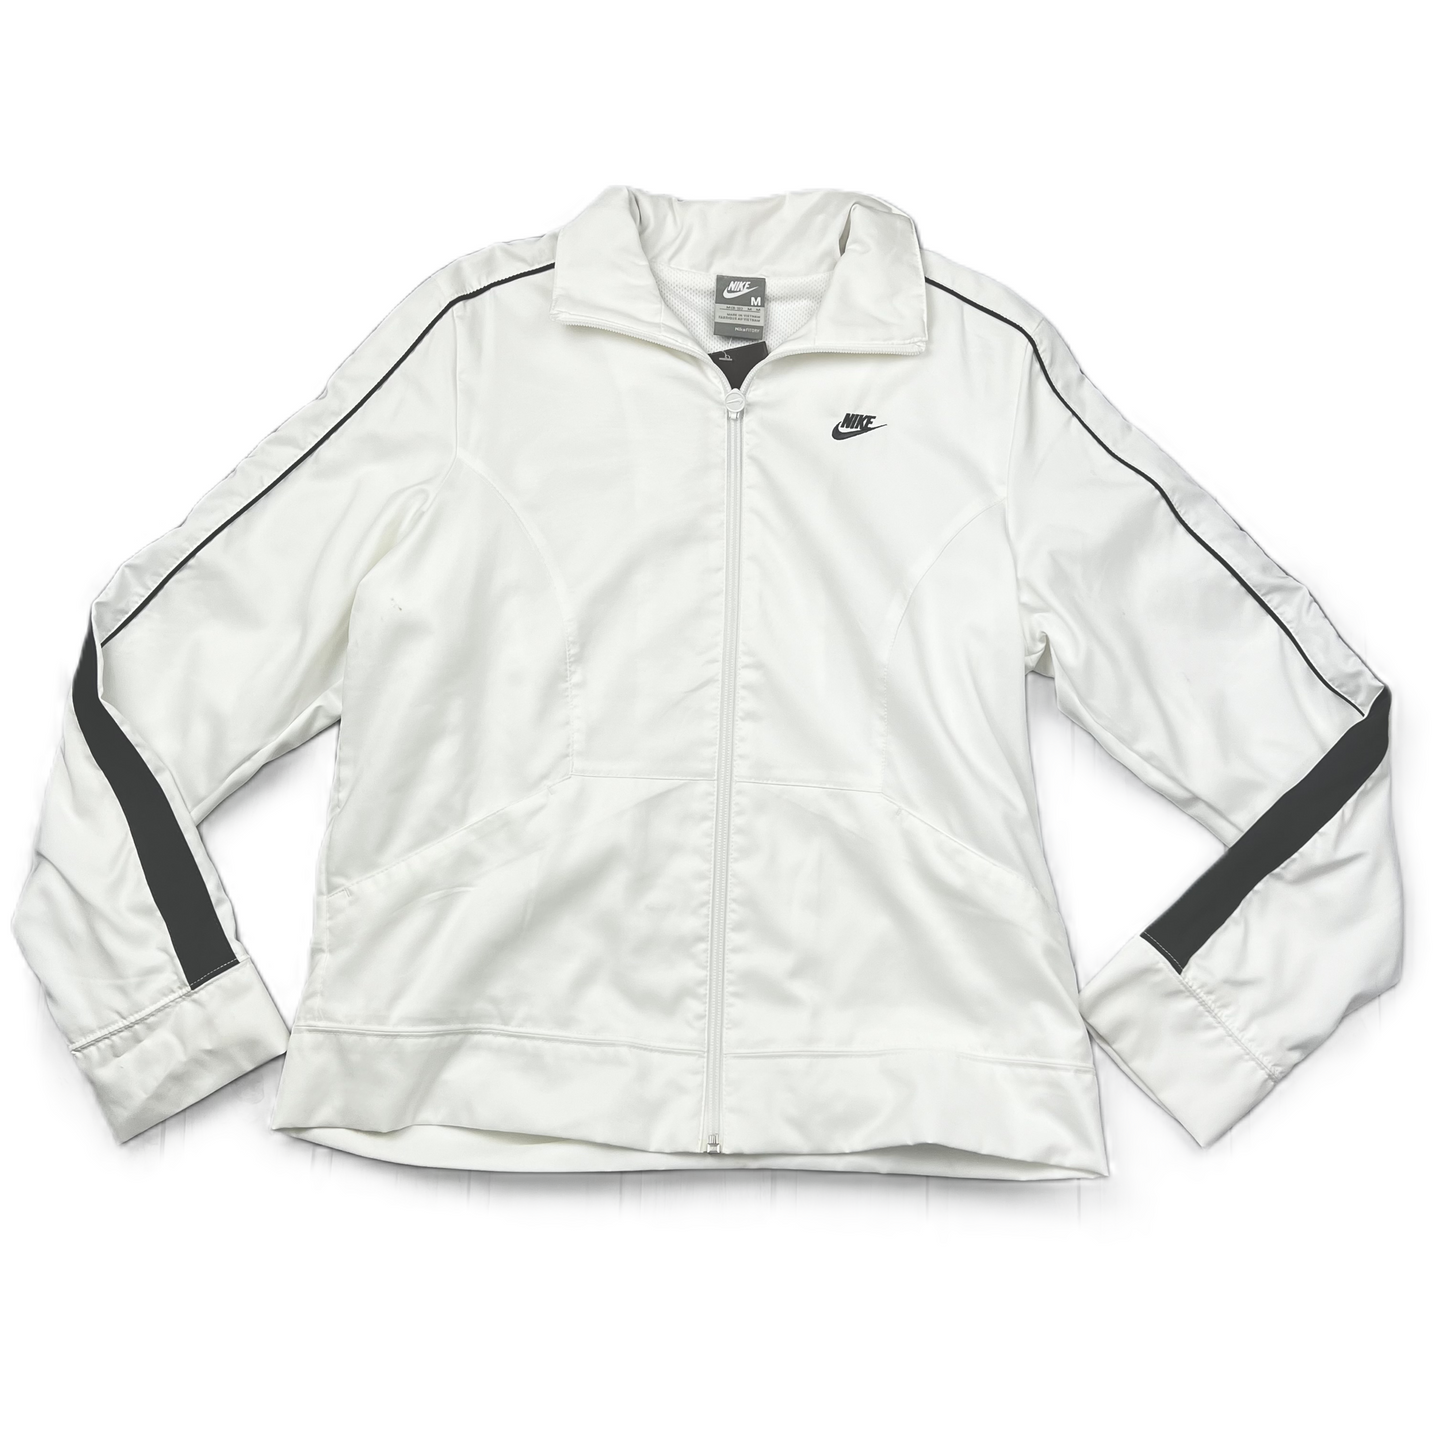 Grey & White Athletic Jacket By Nike, Size: M